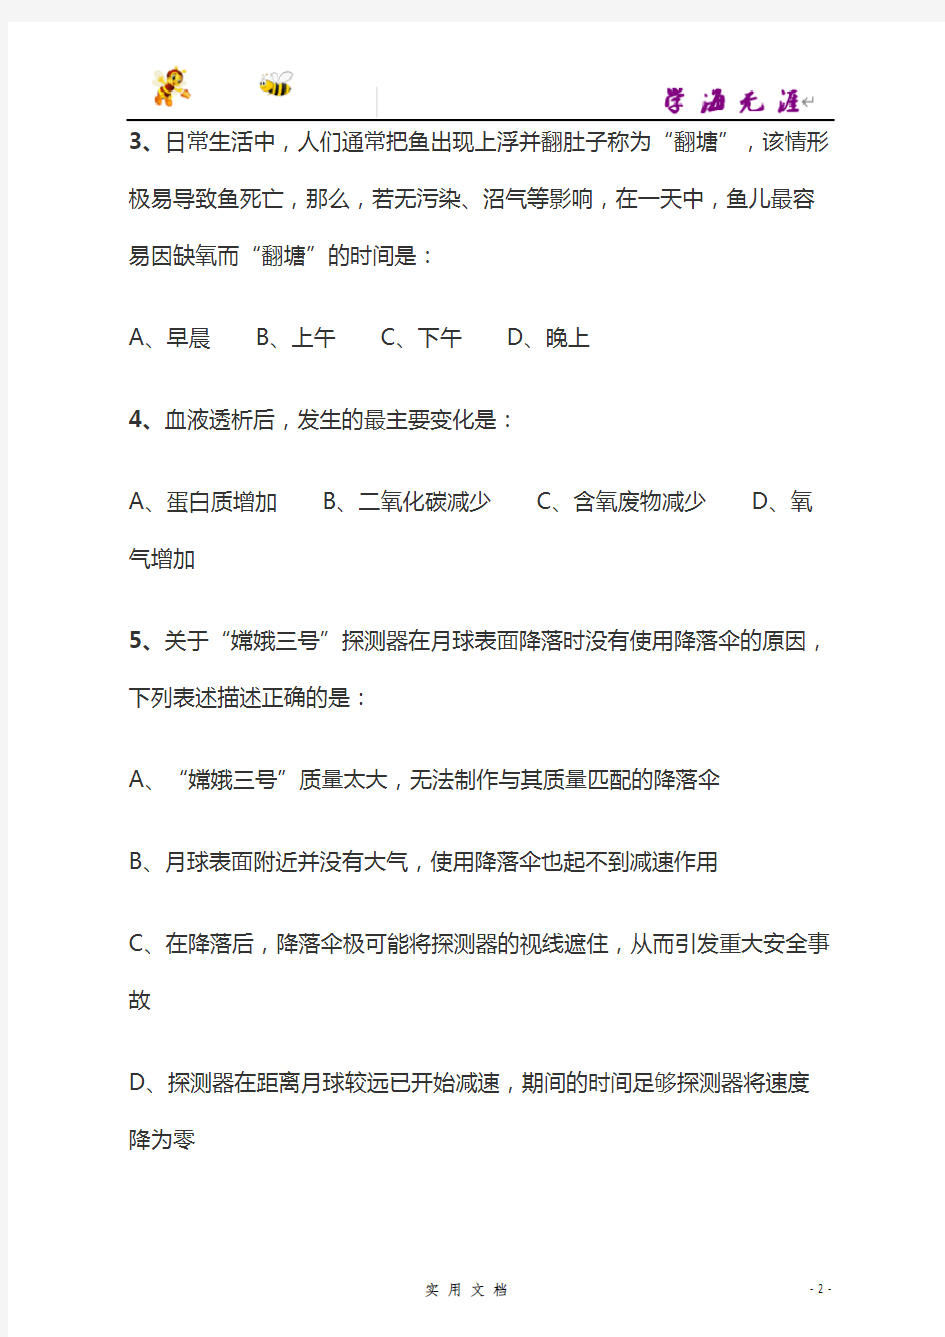 2018--重庆市公务员录用考试《行测》真题(下半--)